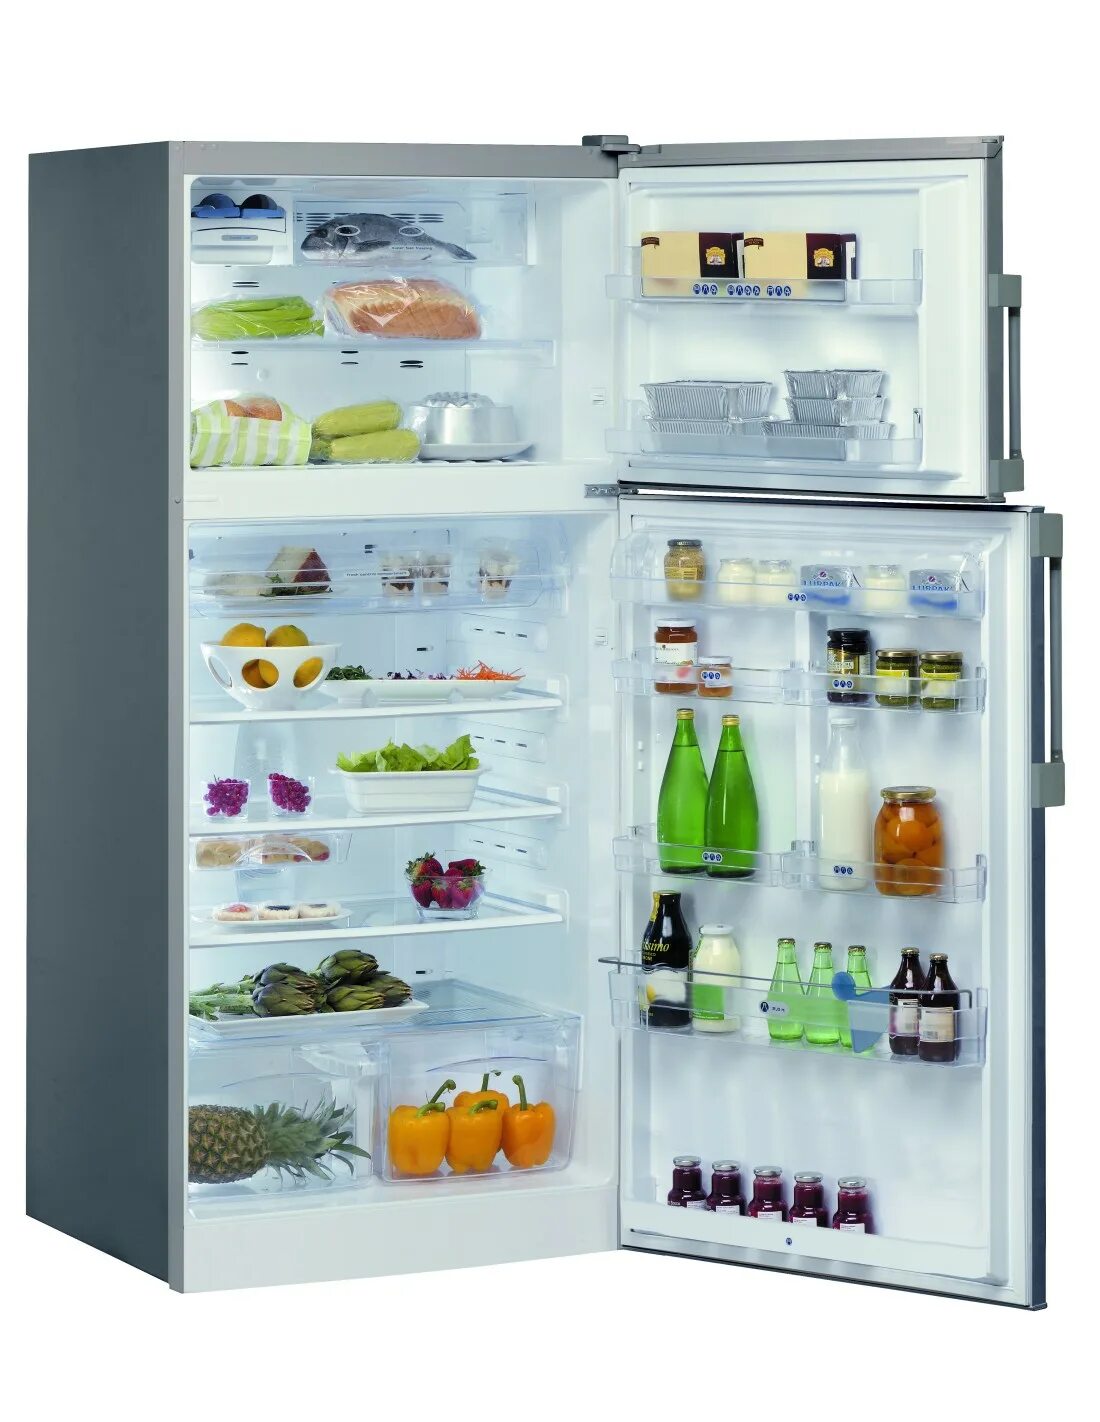 Холодильник Whirlpool t TNF 8211 Ox. Холодильник Whirlpool cb367. Холодильник Вирпул двухкамерный ноу. Холодильник Вирпул двухкамерный ноу Фрост. Недорогой холодильник no frost